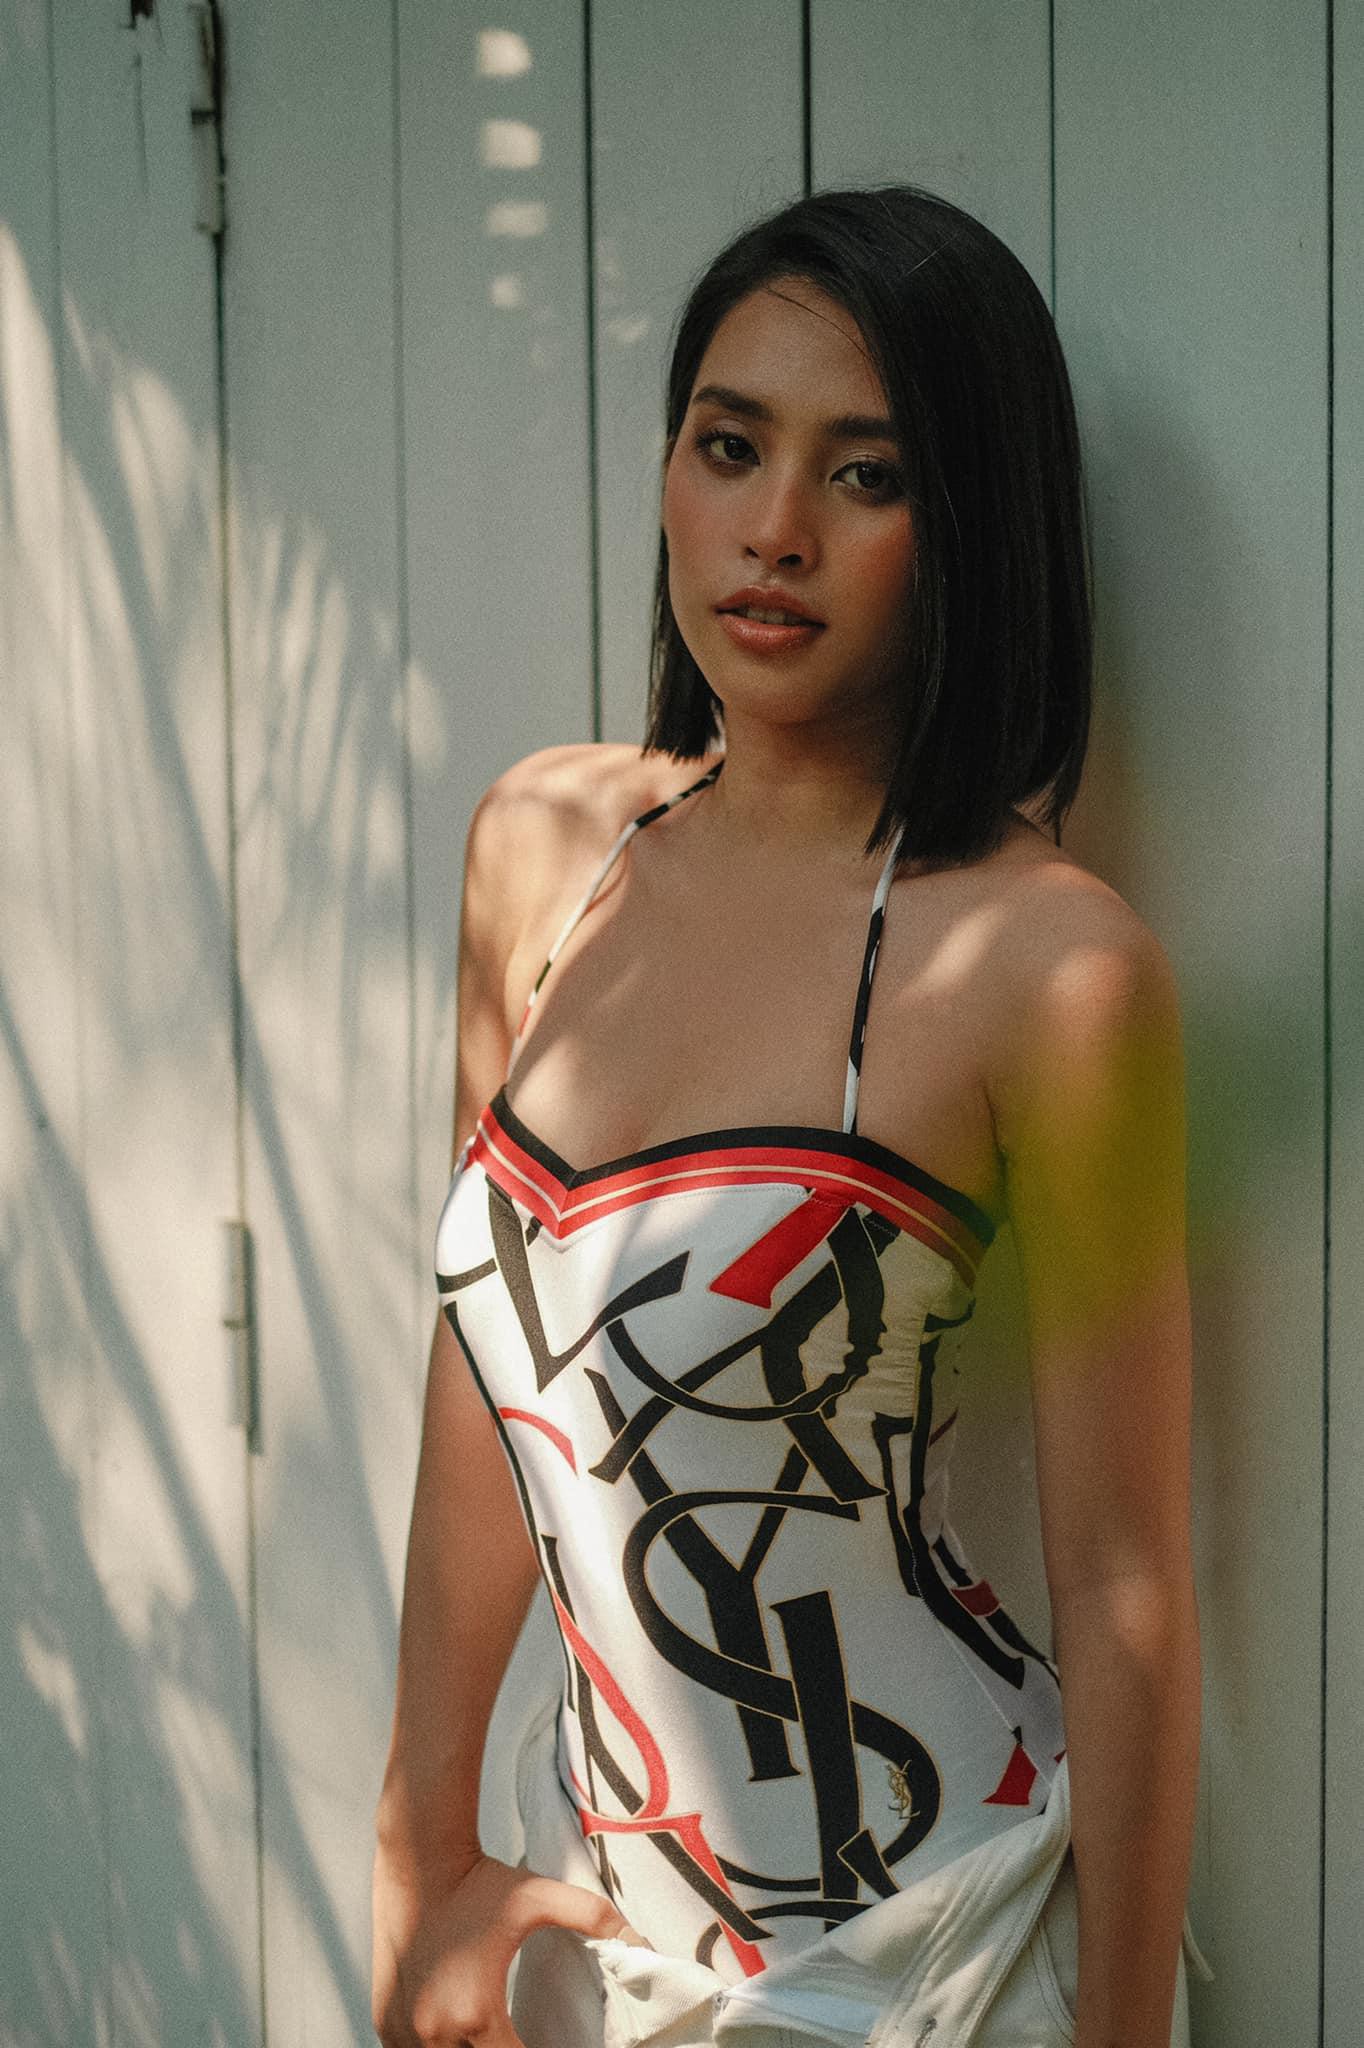 Hoa hậu Tiểu Vy diện áo tắm cut-out khoe đường cong nóng 'bỏng mắt' - Ảnh 7.